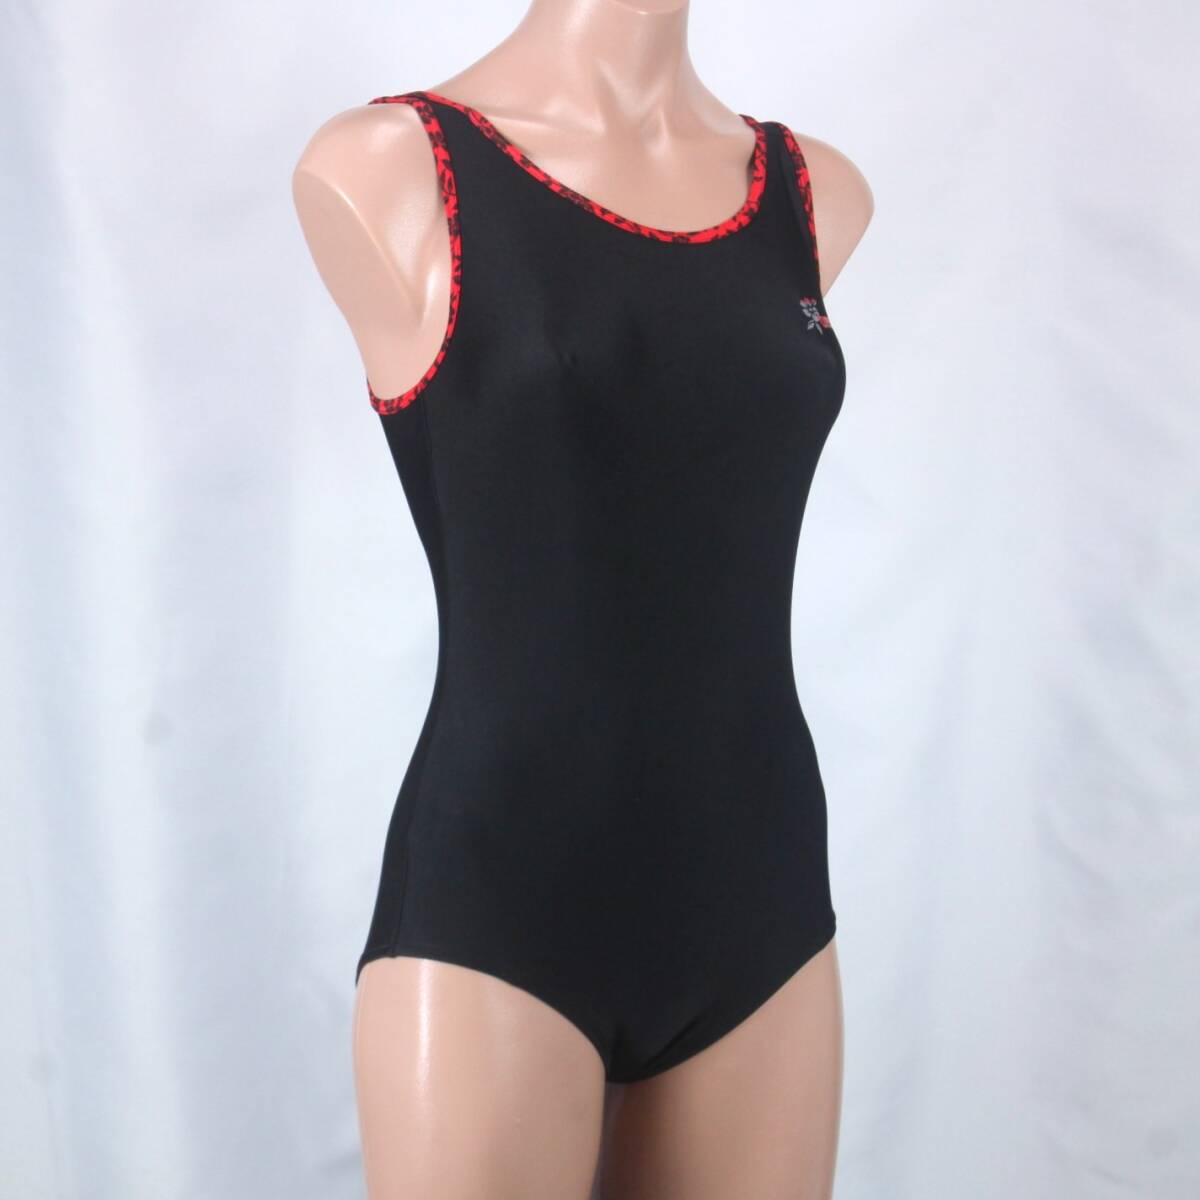 U8371★arena 水着 ワンピース レディース Mサイズ デサント 水泳 競泳 女子 ブラック 黒 赤 無地 スイムウェア スイミング プールの画像2